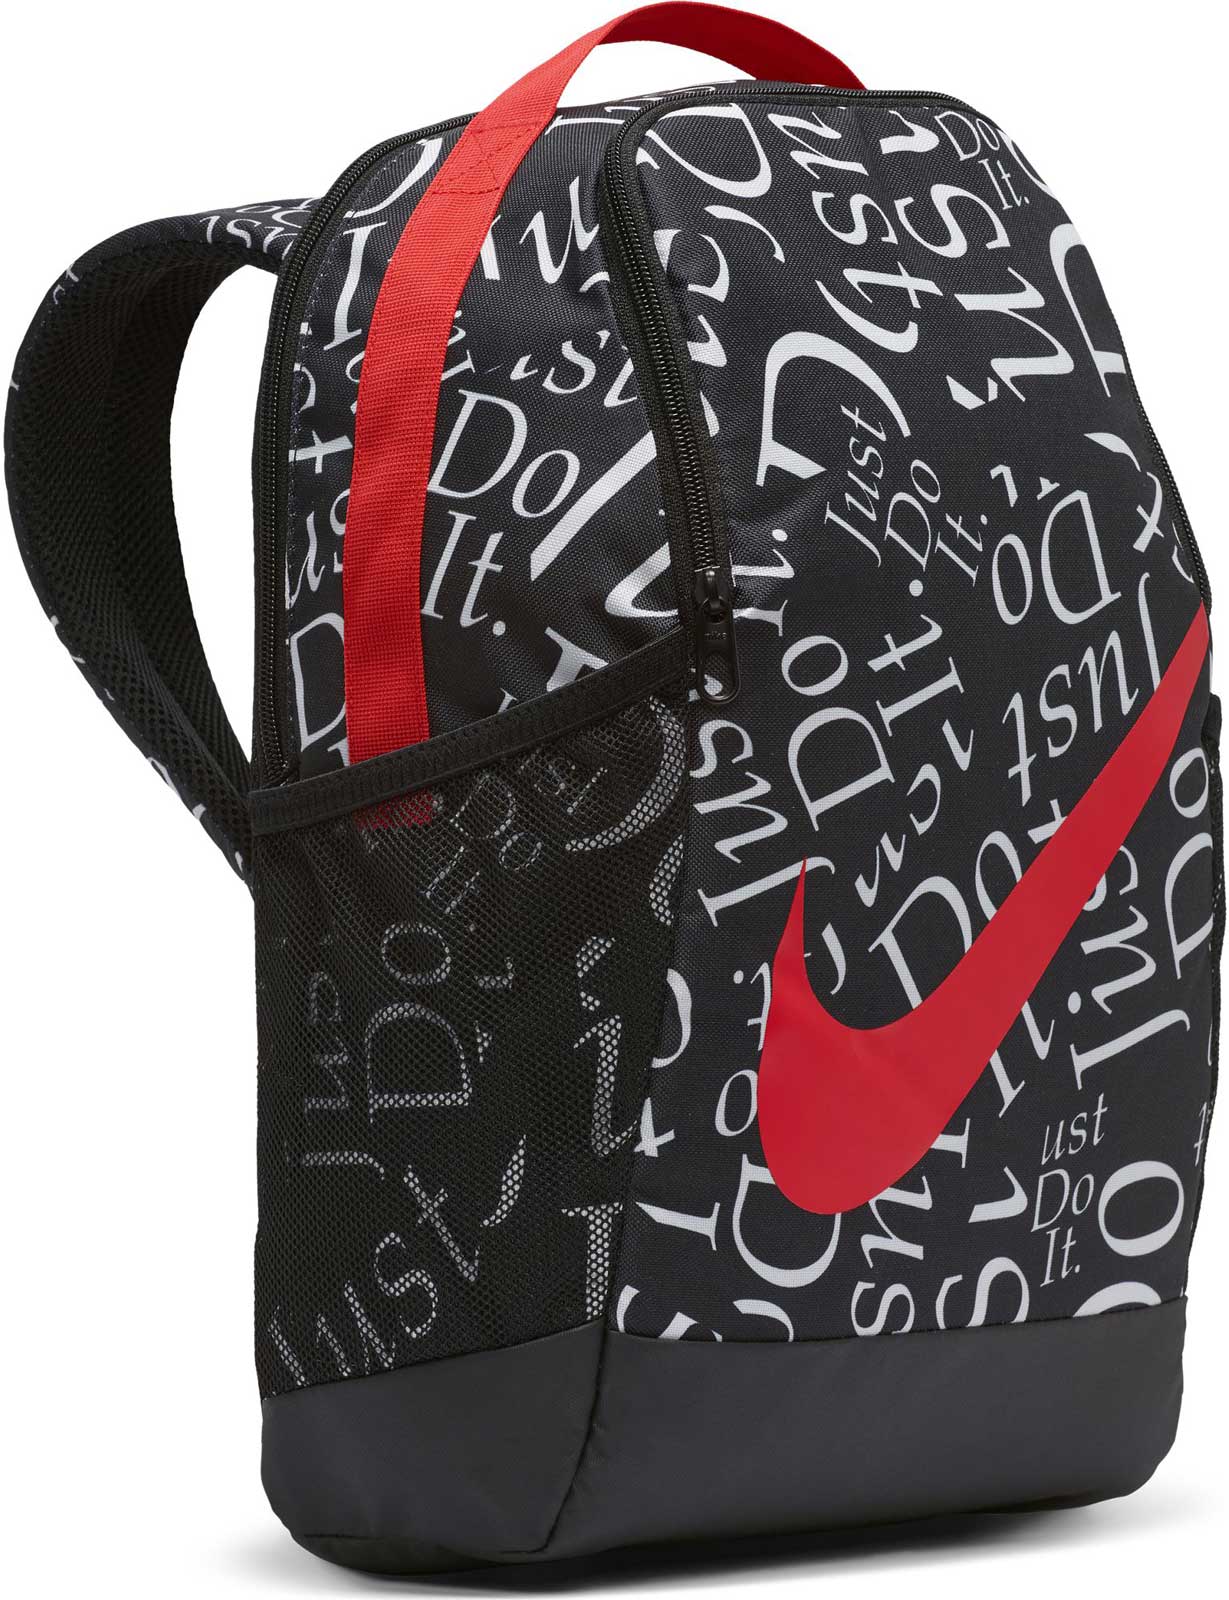 Children's backpack